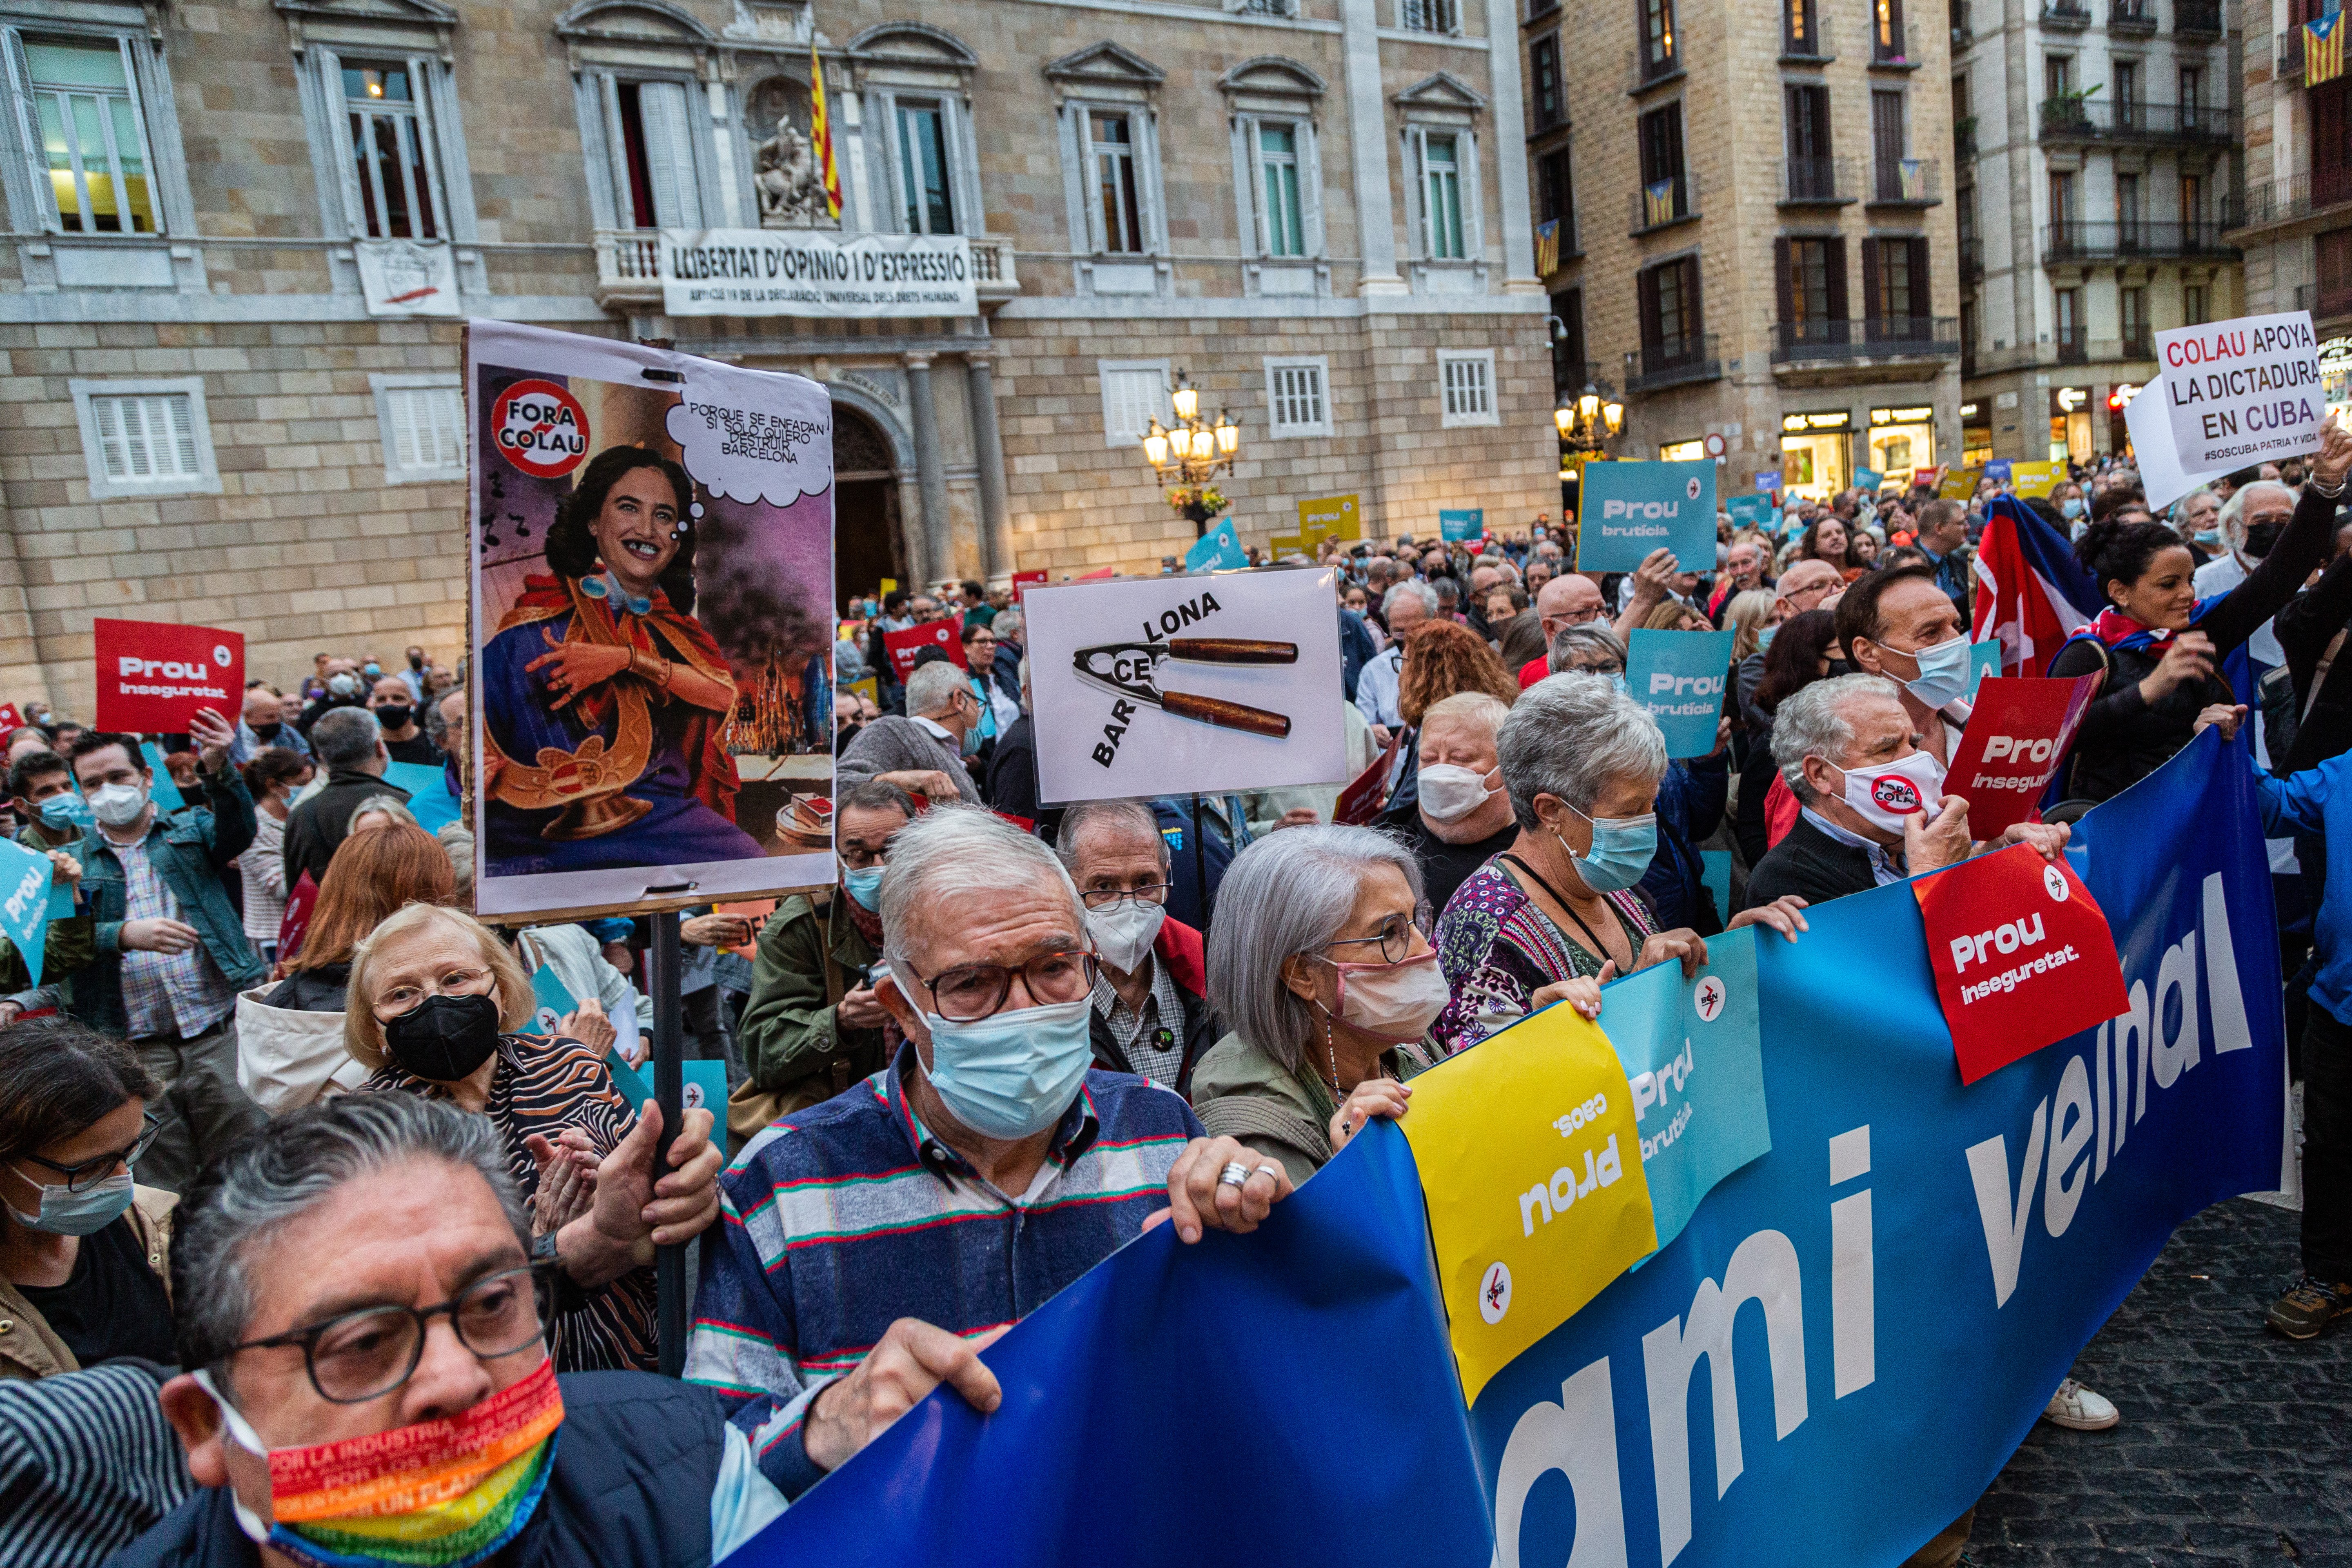 Els manifestants de Barcelona és Imparable desborden la convocatòria: “Colau dimissió”